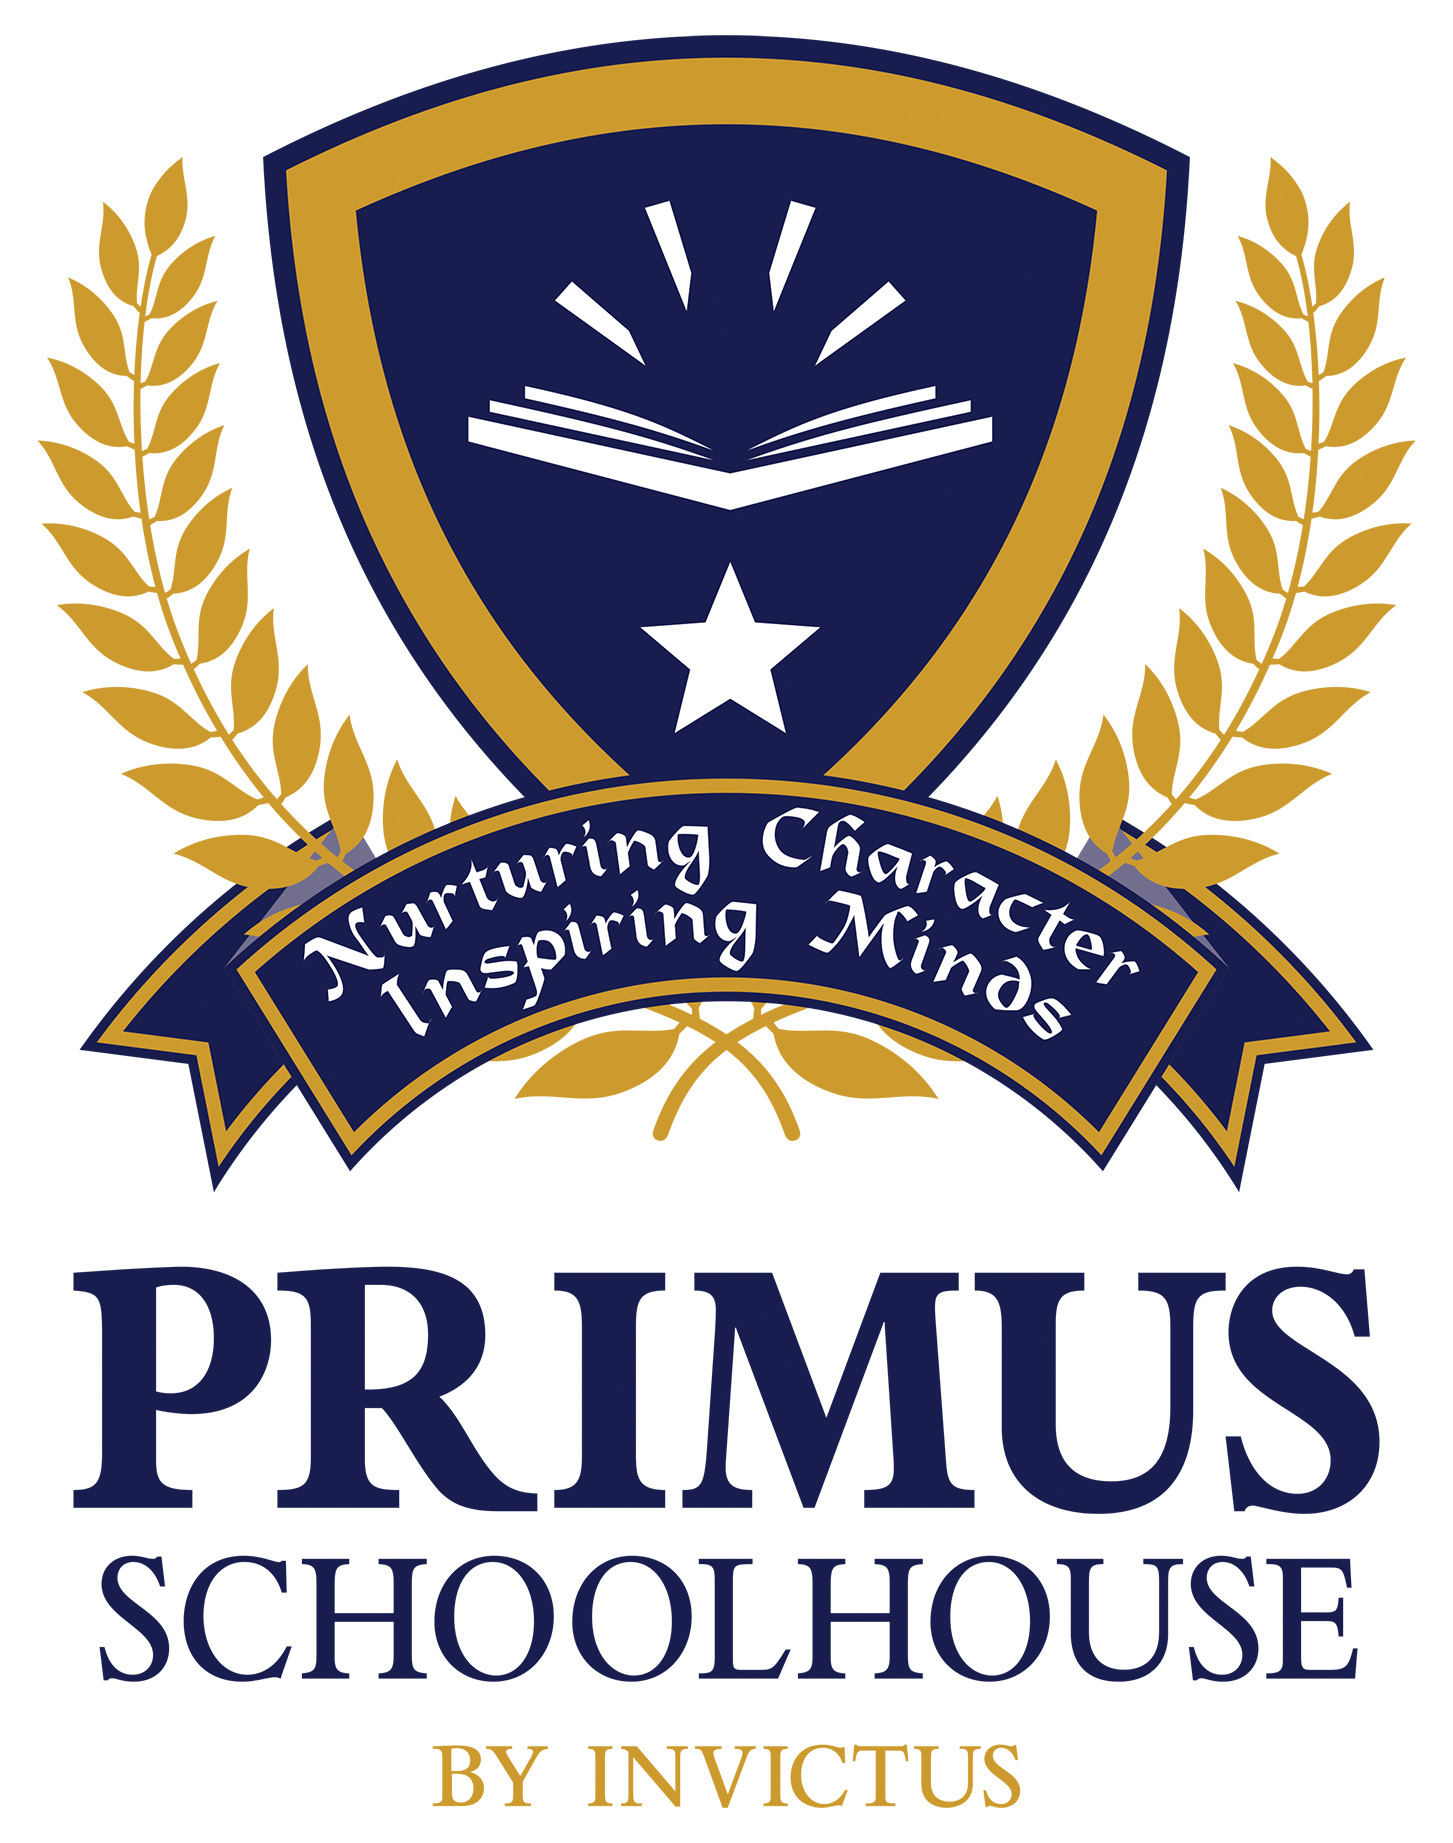 Primus Schoolhouse